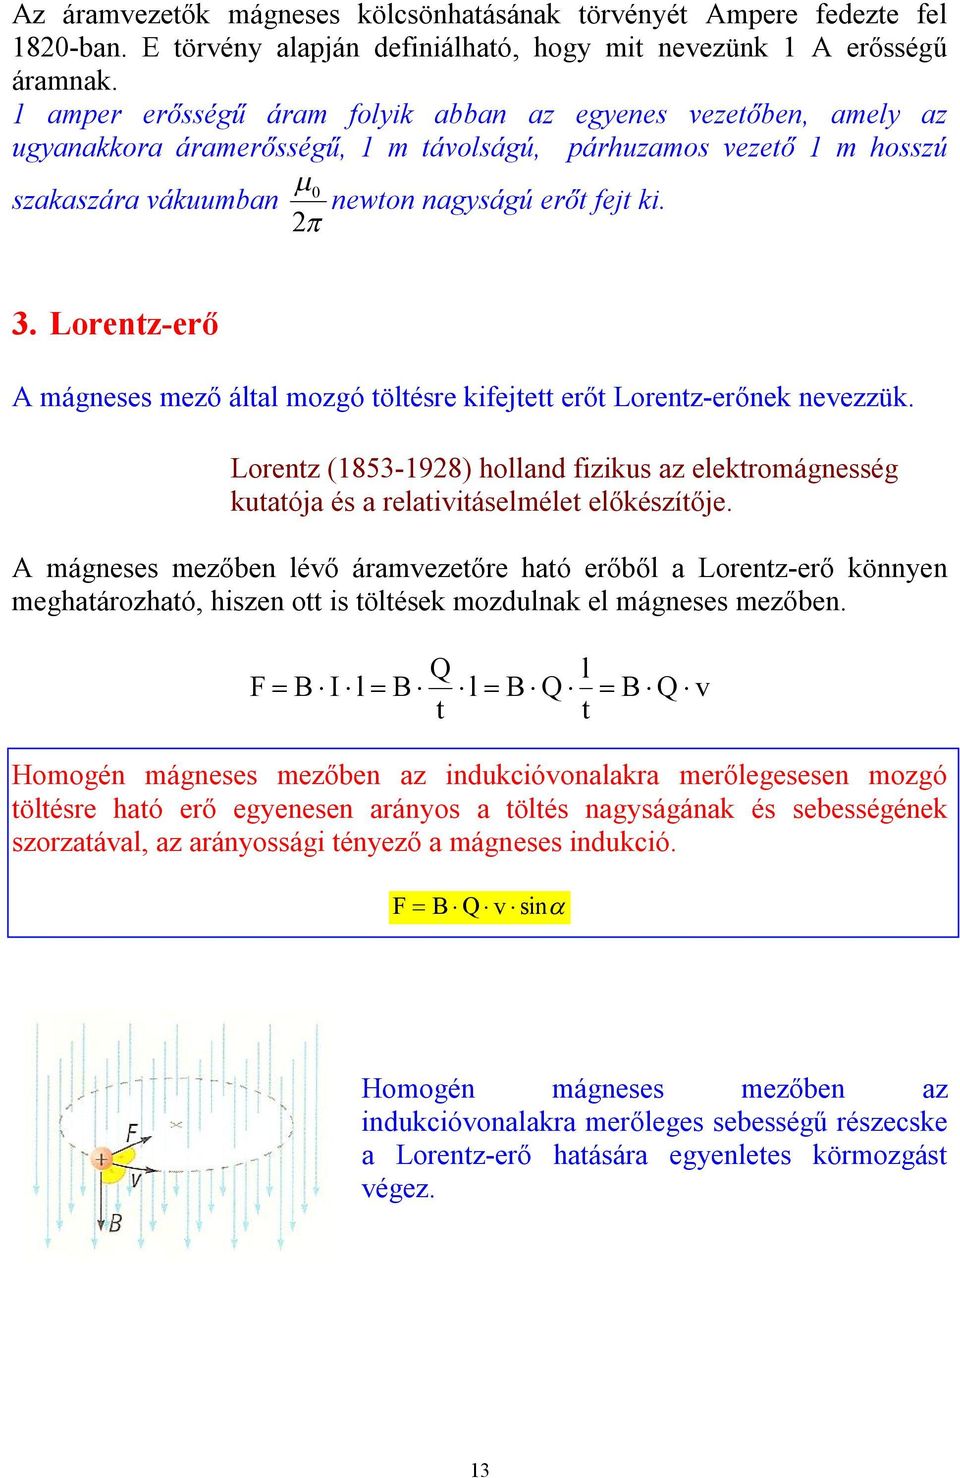 Lorentz-erő A mágneses mező által mozgó töltésre kifejtett erőt Lorentz-erőnek nevezzük. Lorentz (1853-1928) holland fizikus az elektromágnesség kutatója és a relativitáselmélet előkészítője.